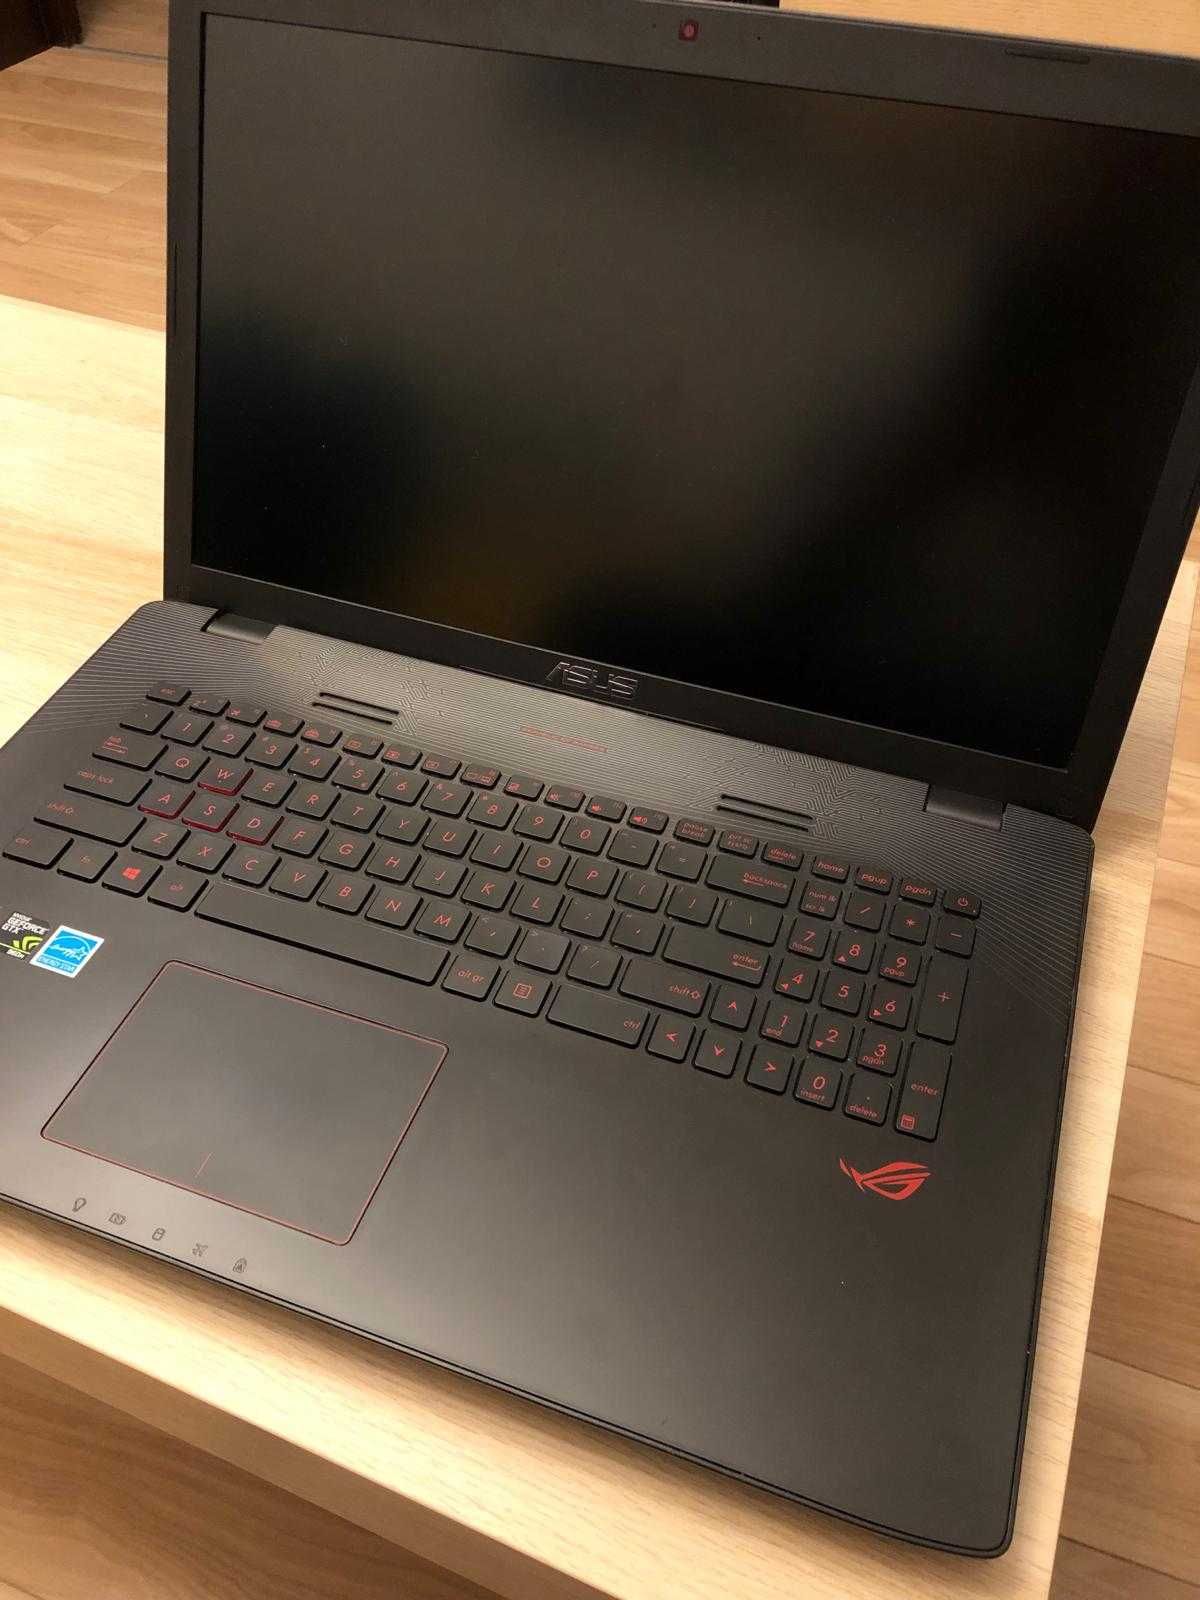 Laptop Asus Gaming Notebook PC